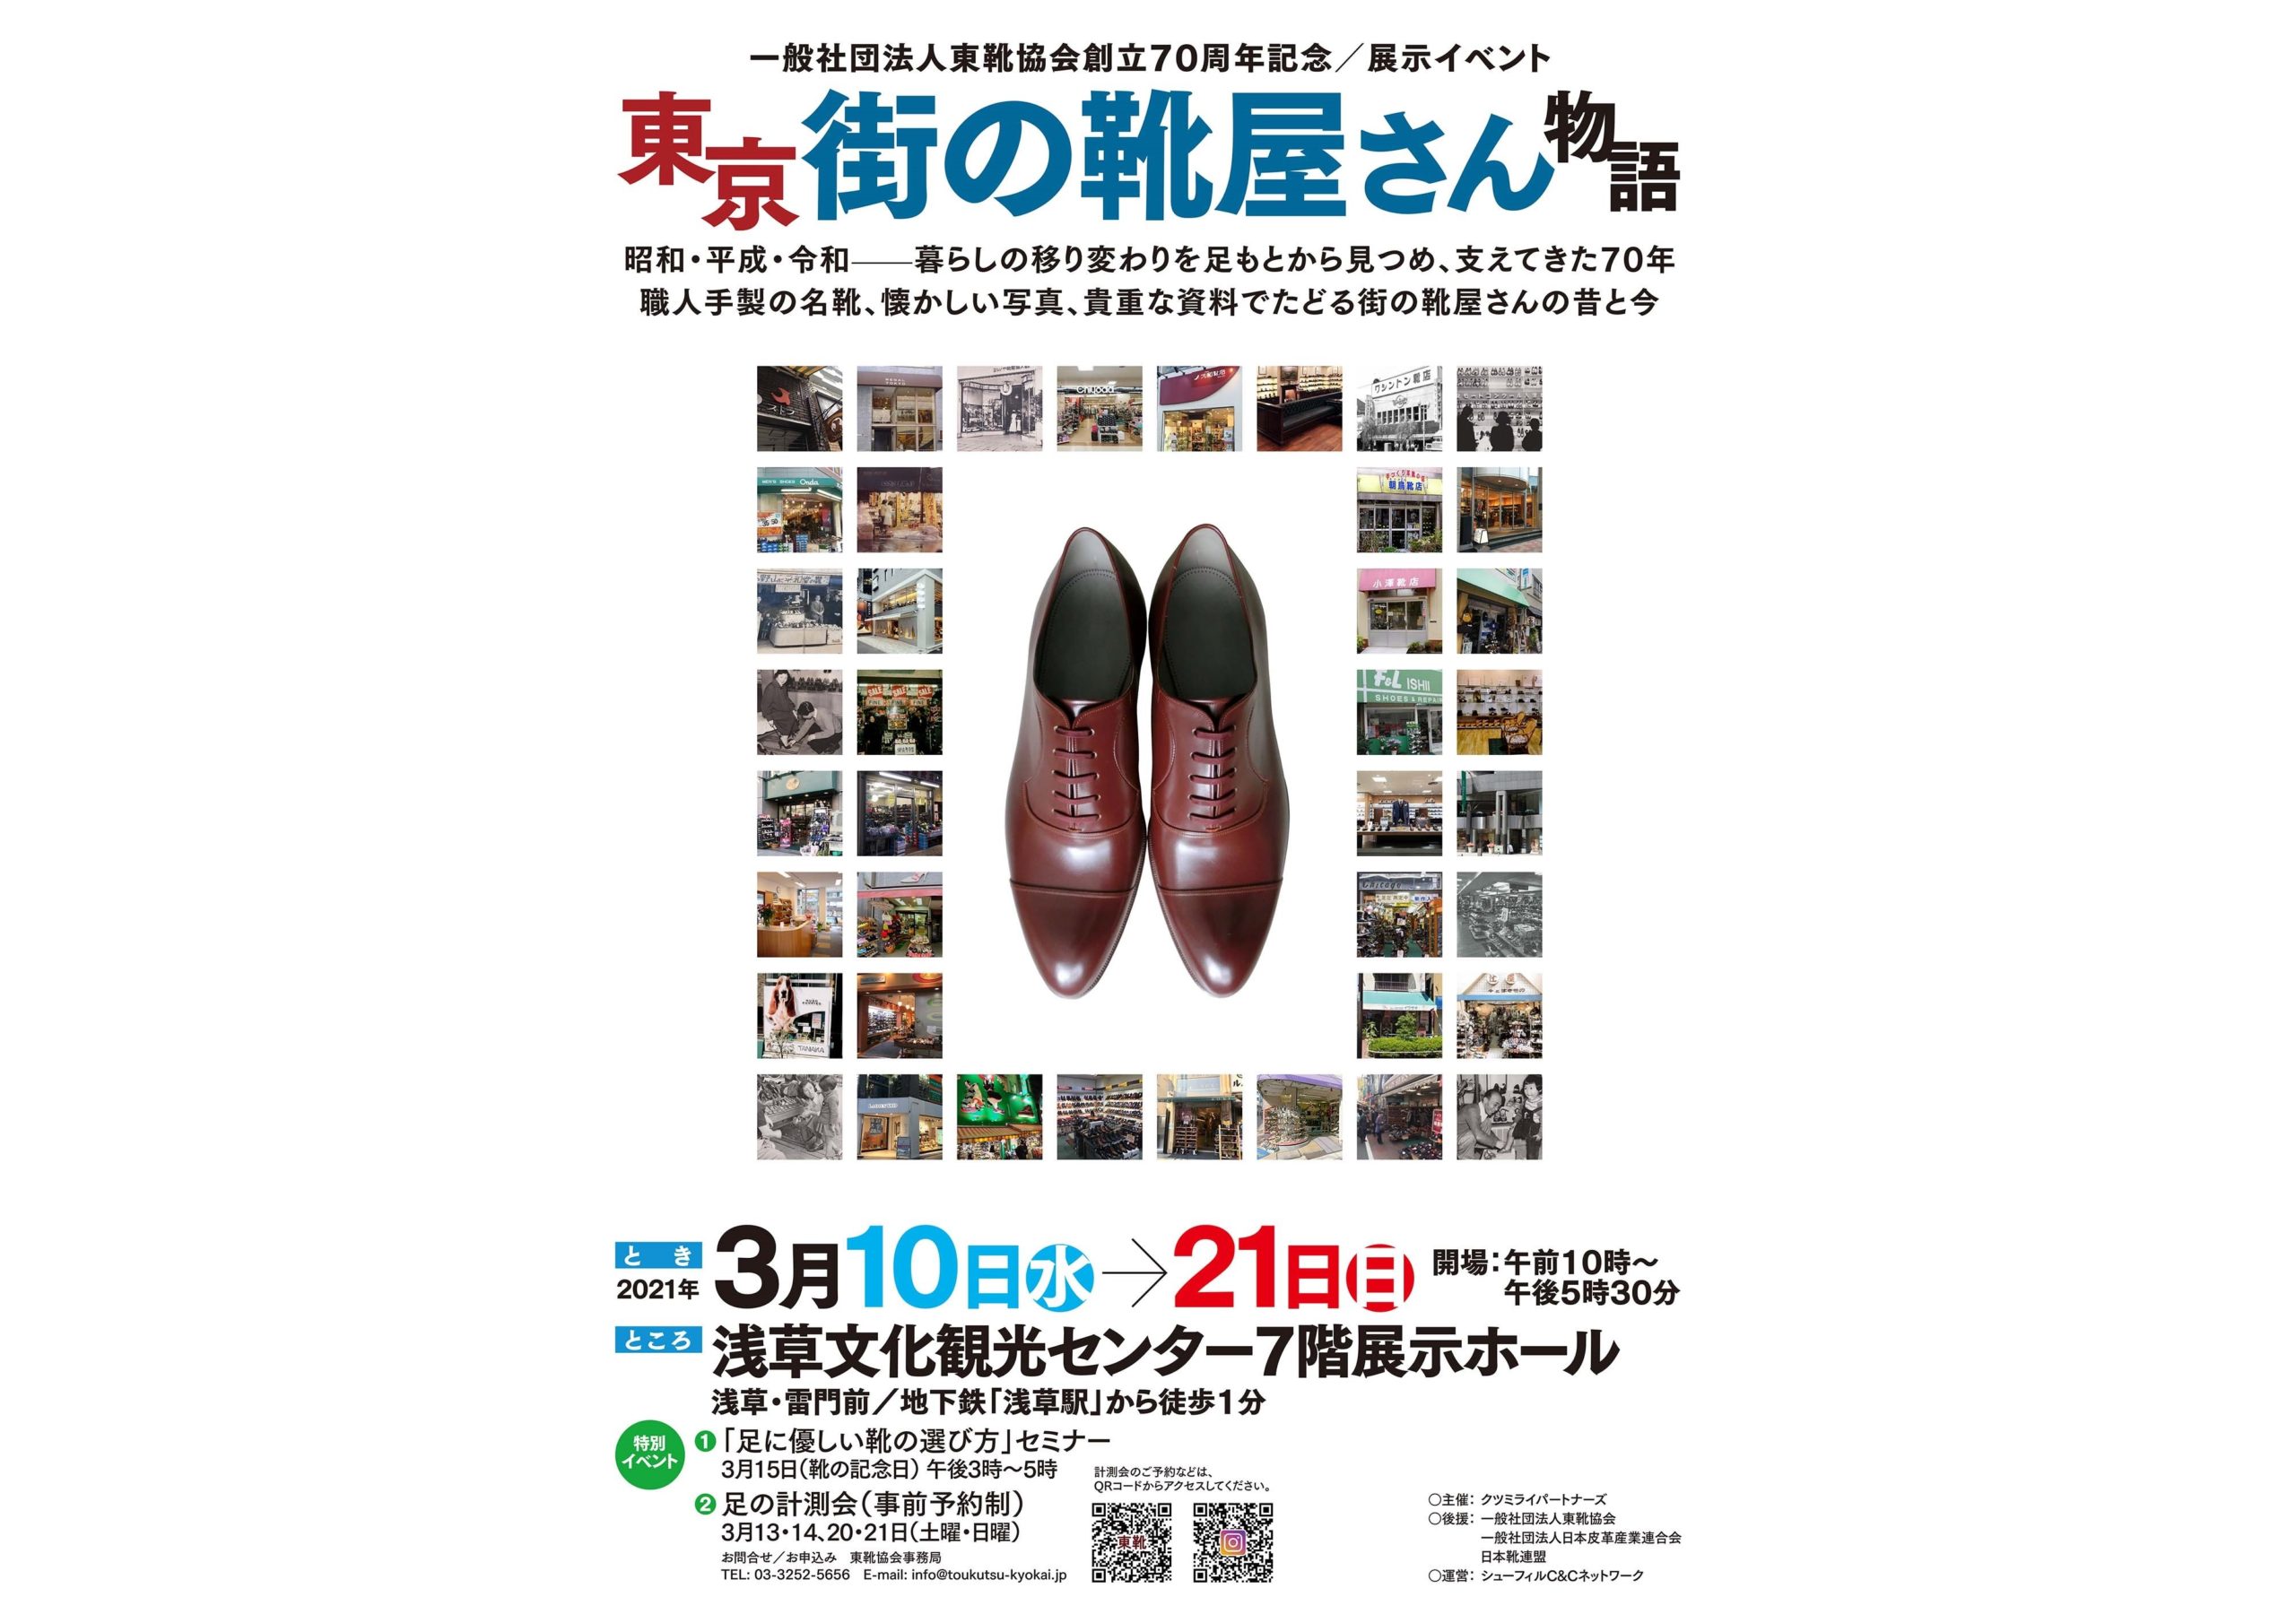 アメリカ屋靴店ポスター2 - ポスター